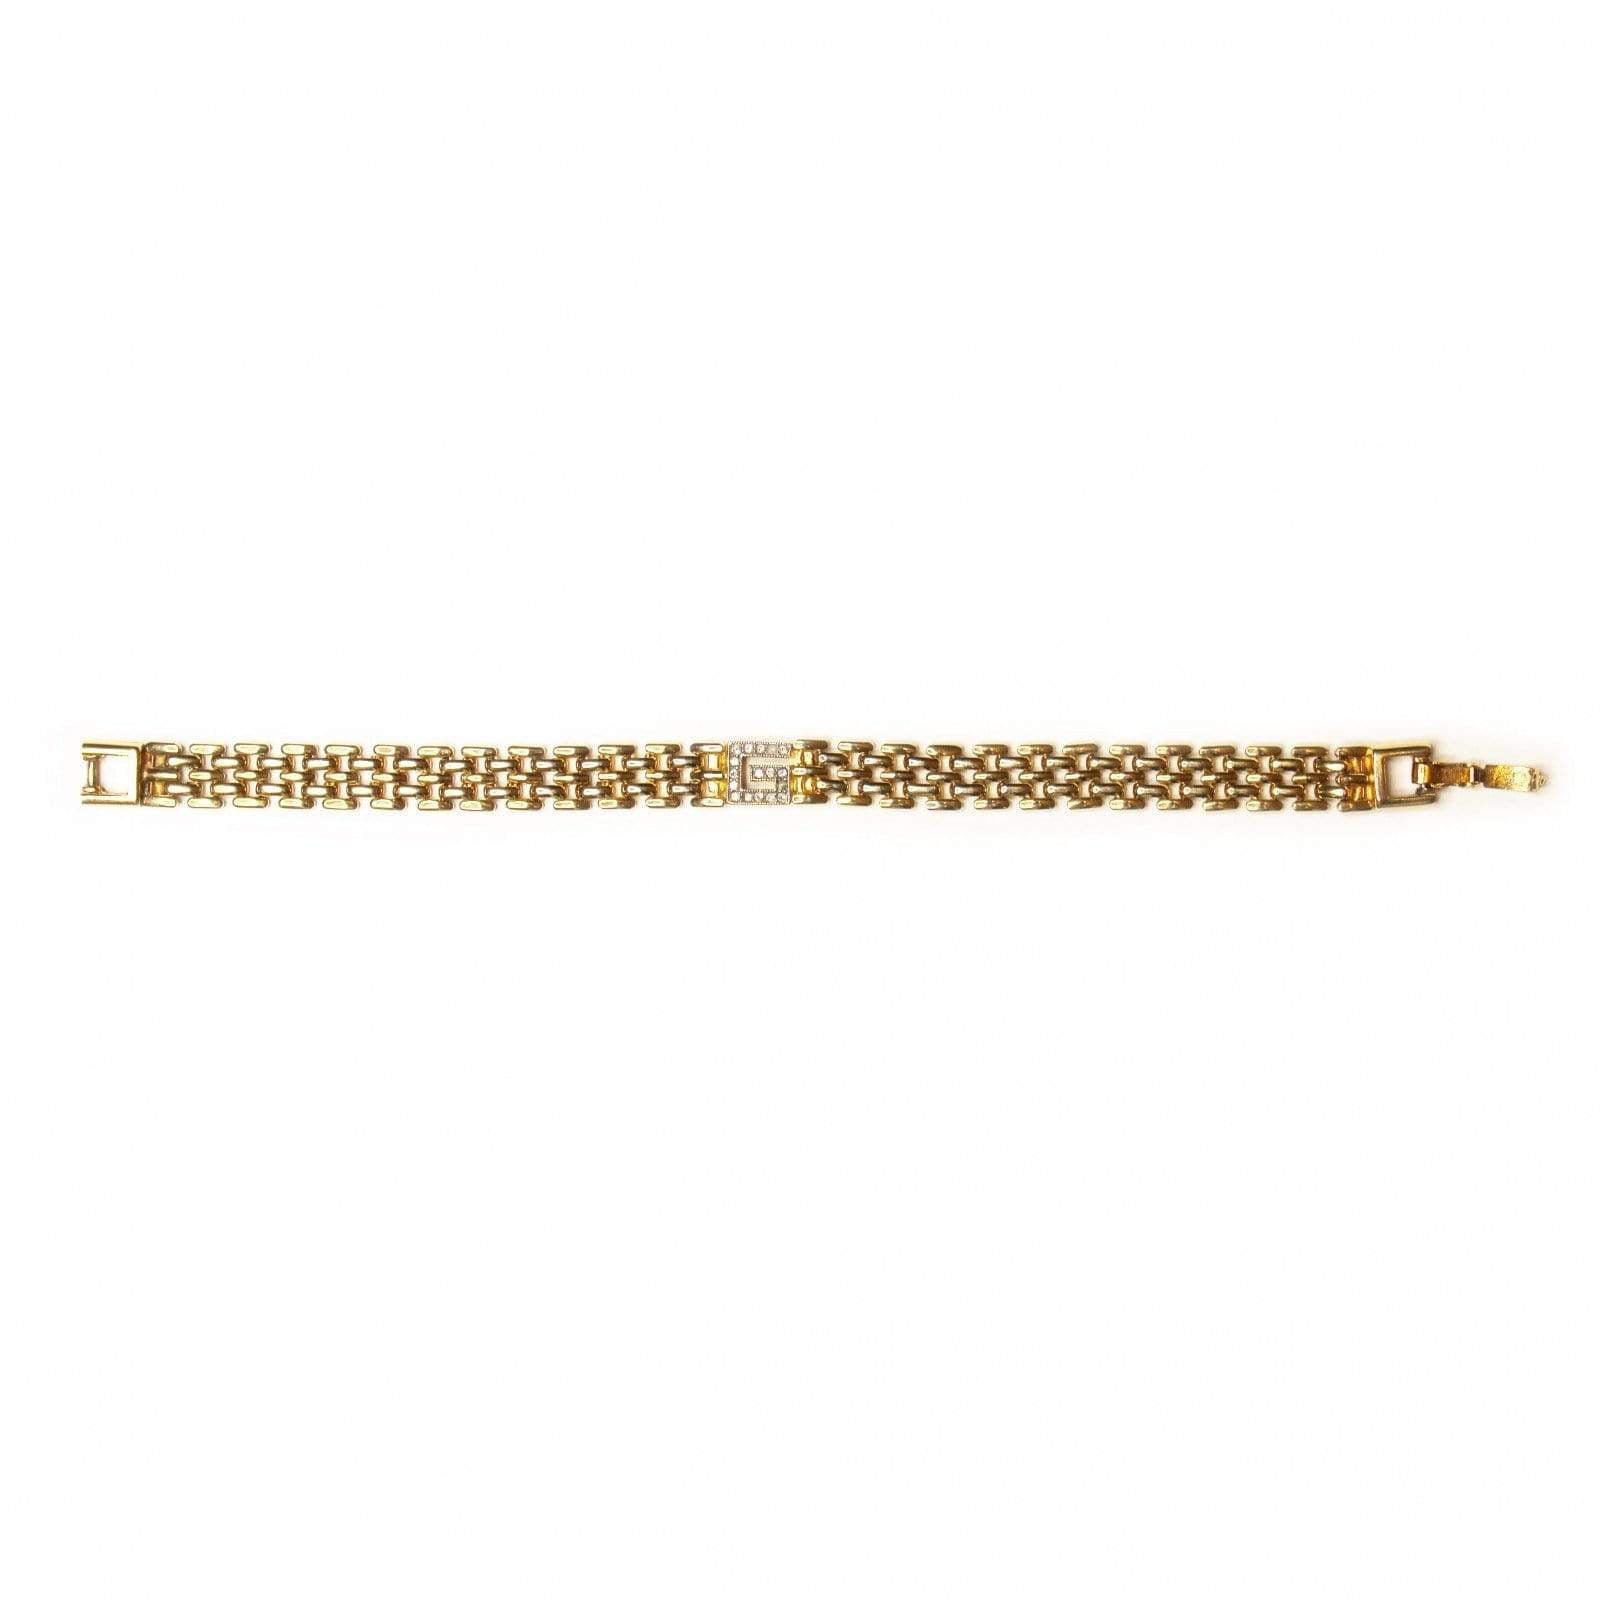 Gold Vintage Givenchy Bracelet W/ Crystal Accents RSTKD Vintage